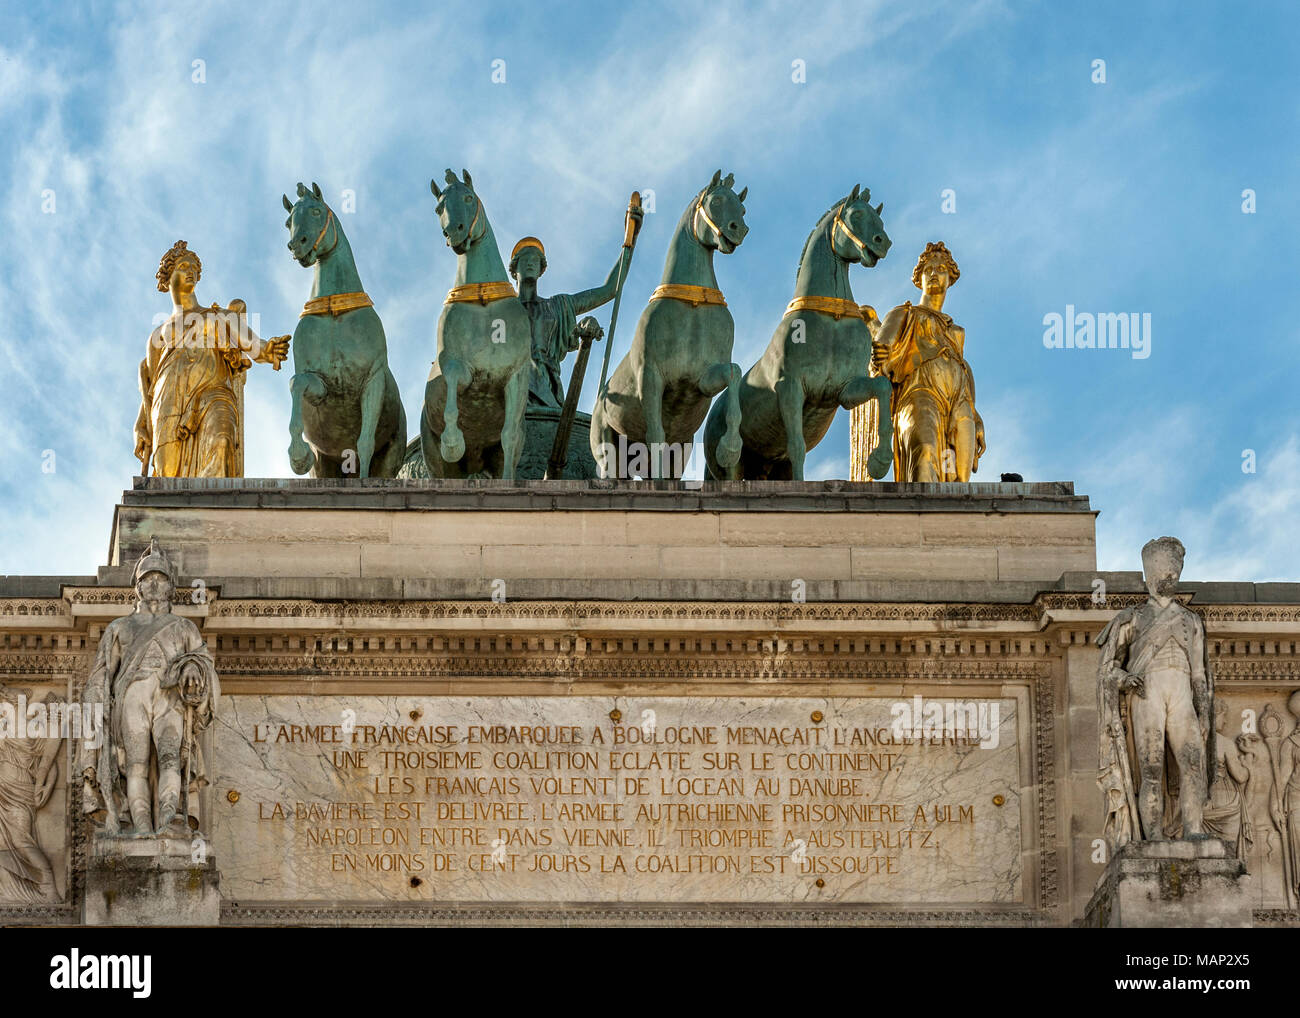 PARIGI, FRANCIA - 07 MAGGIO 2011: Statua di un Cariota a quattro cavalli in cima all'Arco di Trionfo del Carrousel Foto Stock